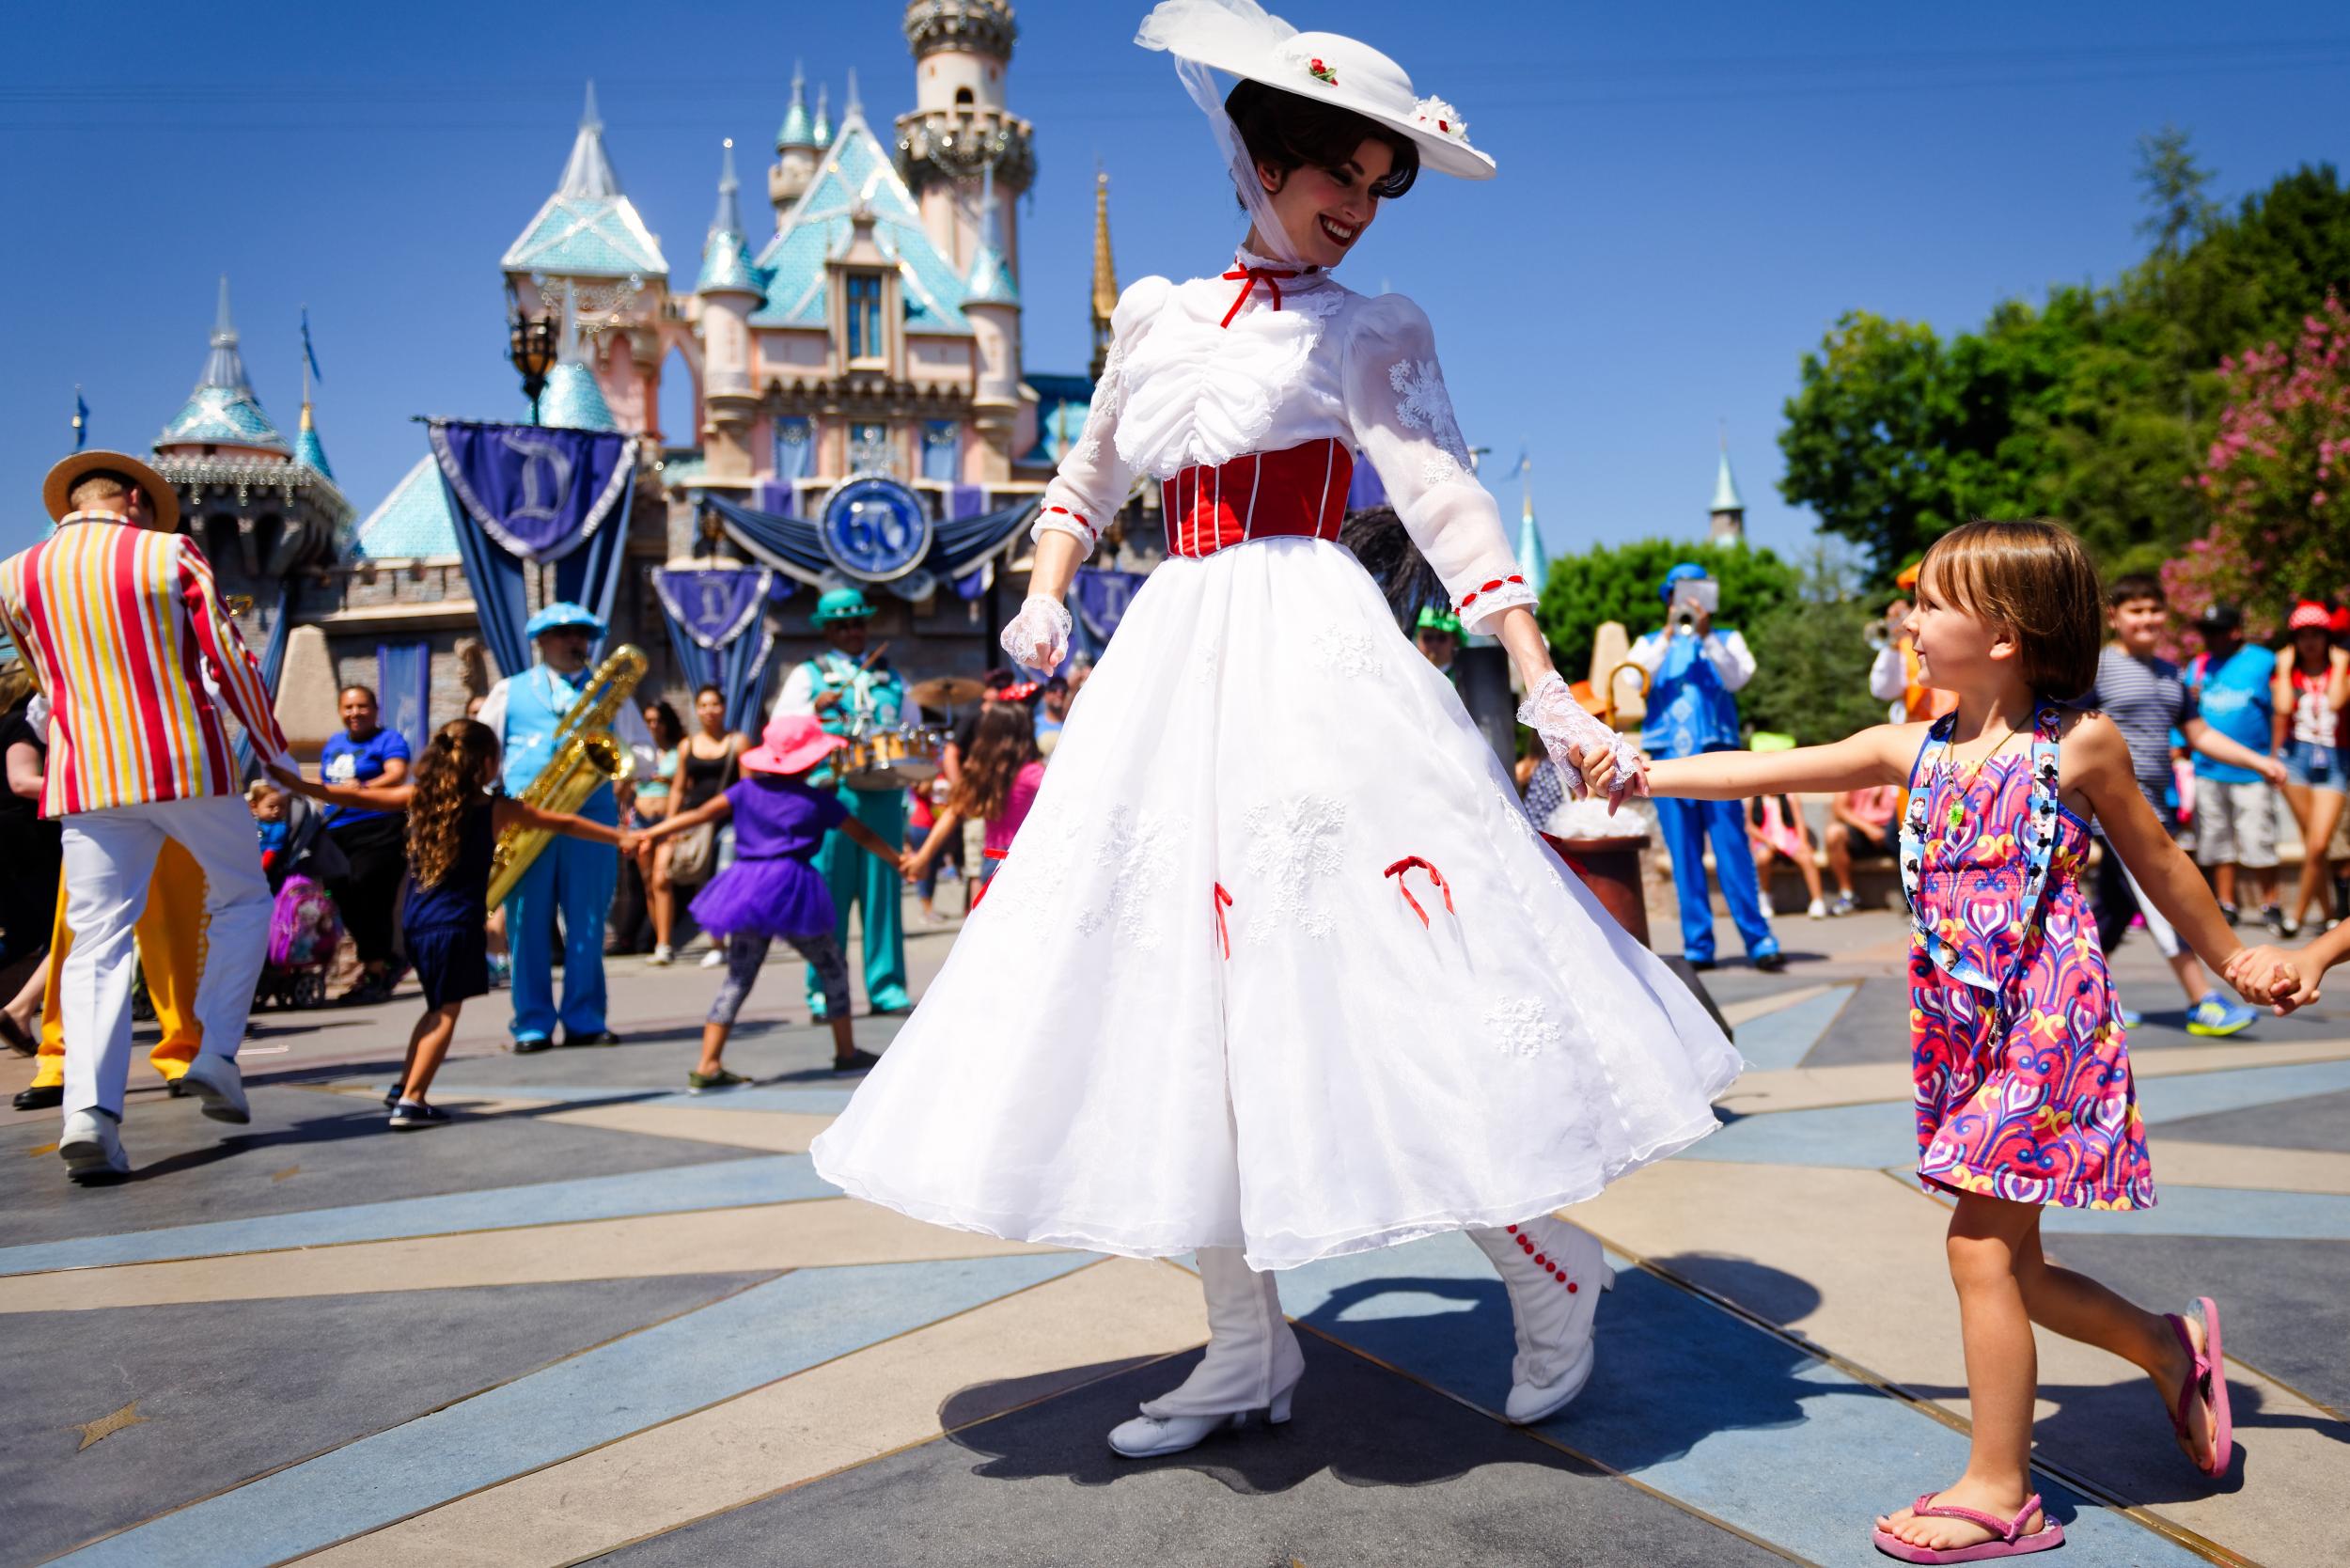 Disneyland in California opened its doors in 1955